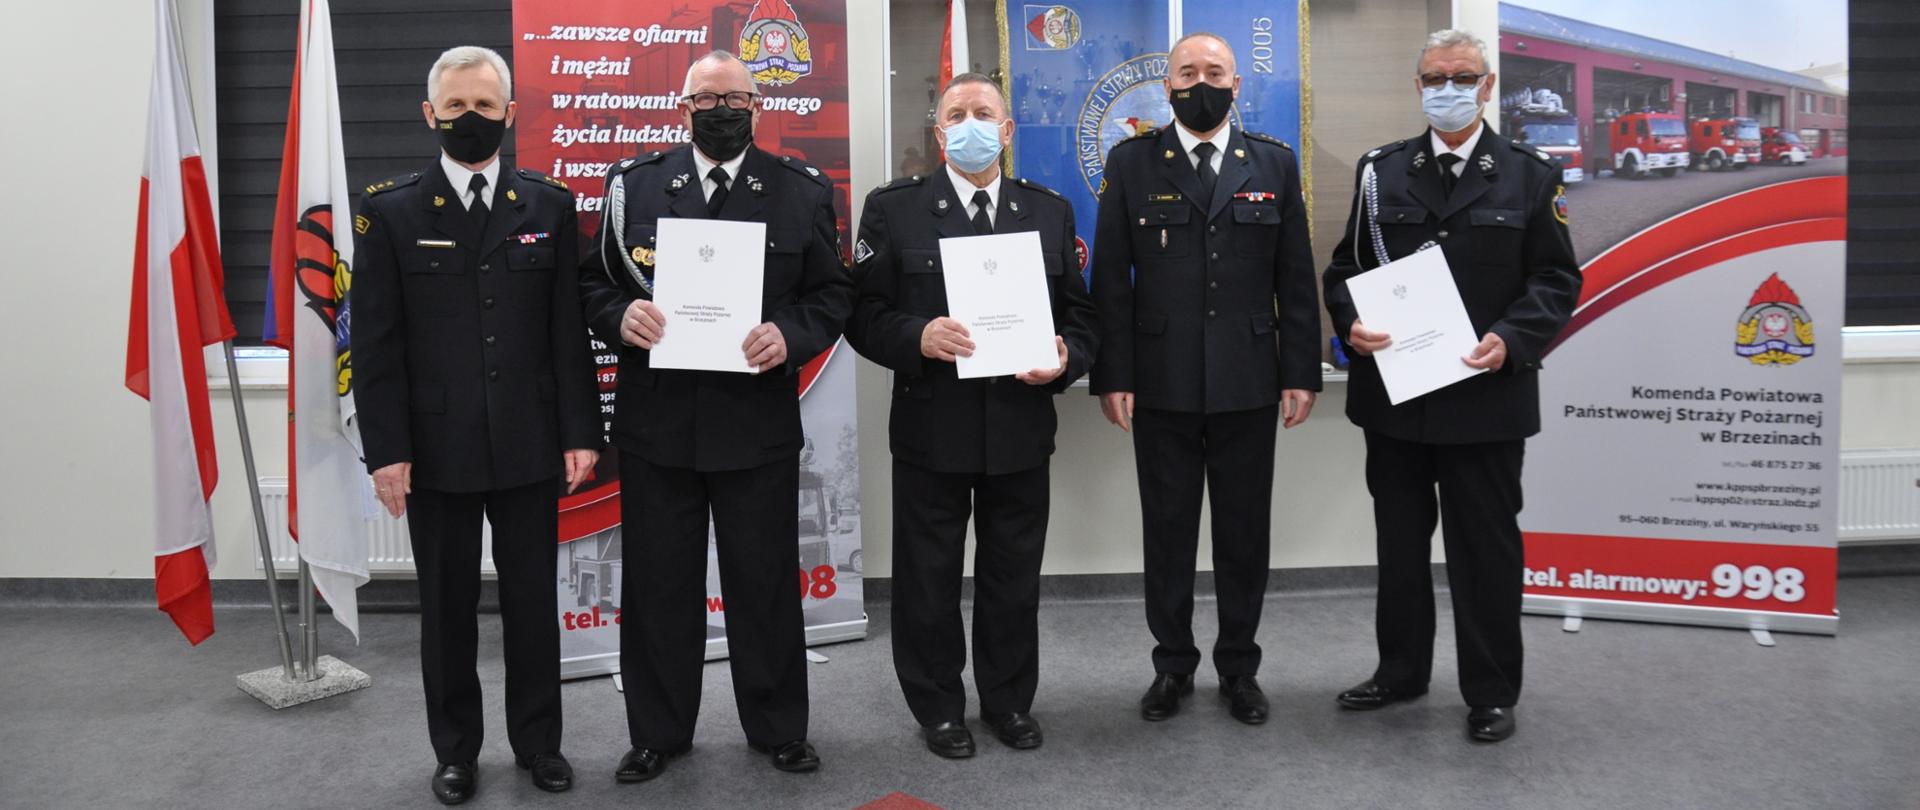 Na zdjęciu Komendant Powiatowy PSP w Brzezinach oraz jego Zastępca oraz trzech druhów OSP odbierających świadczenie ratownicze.